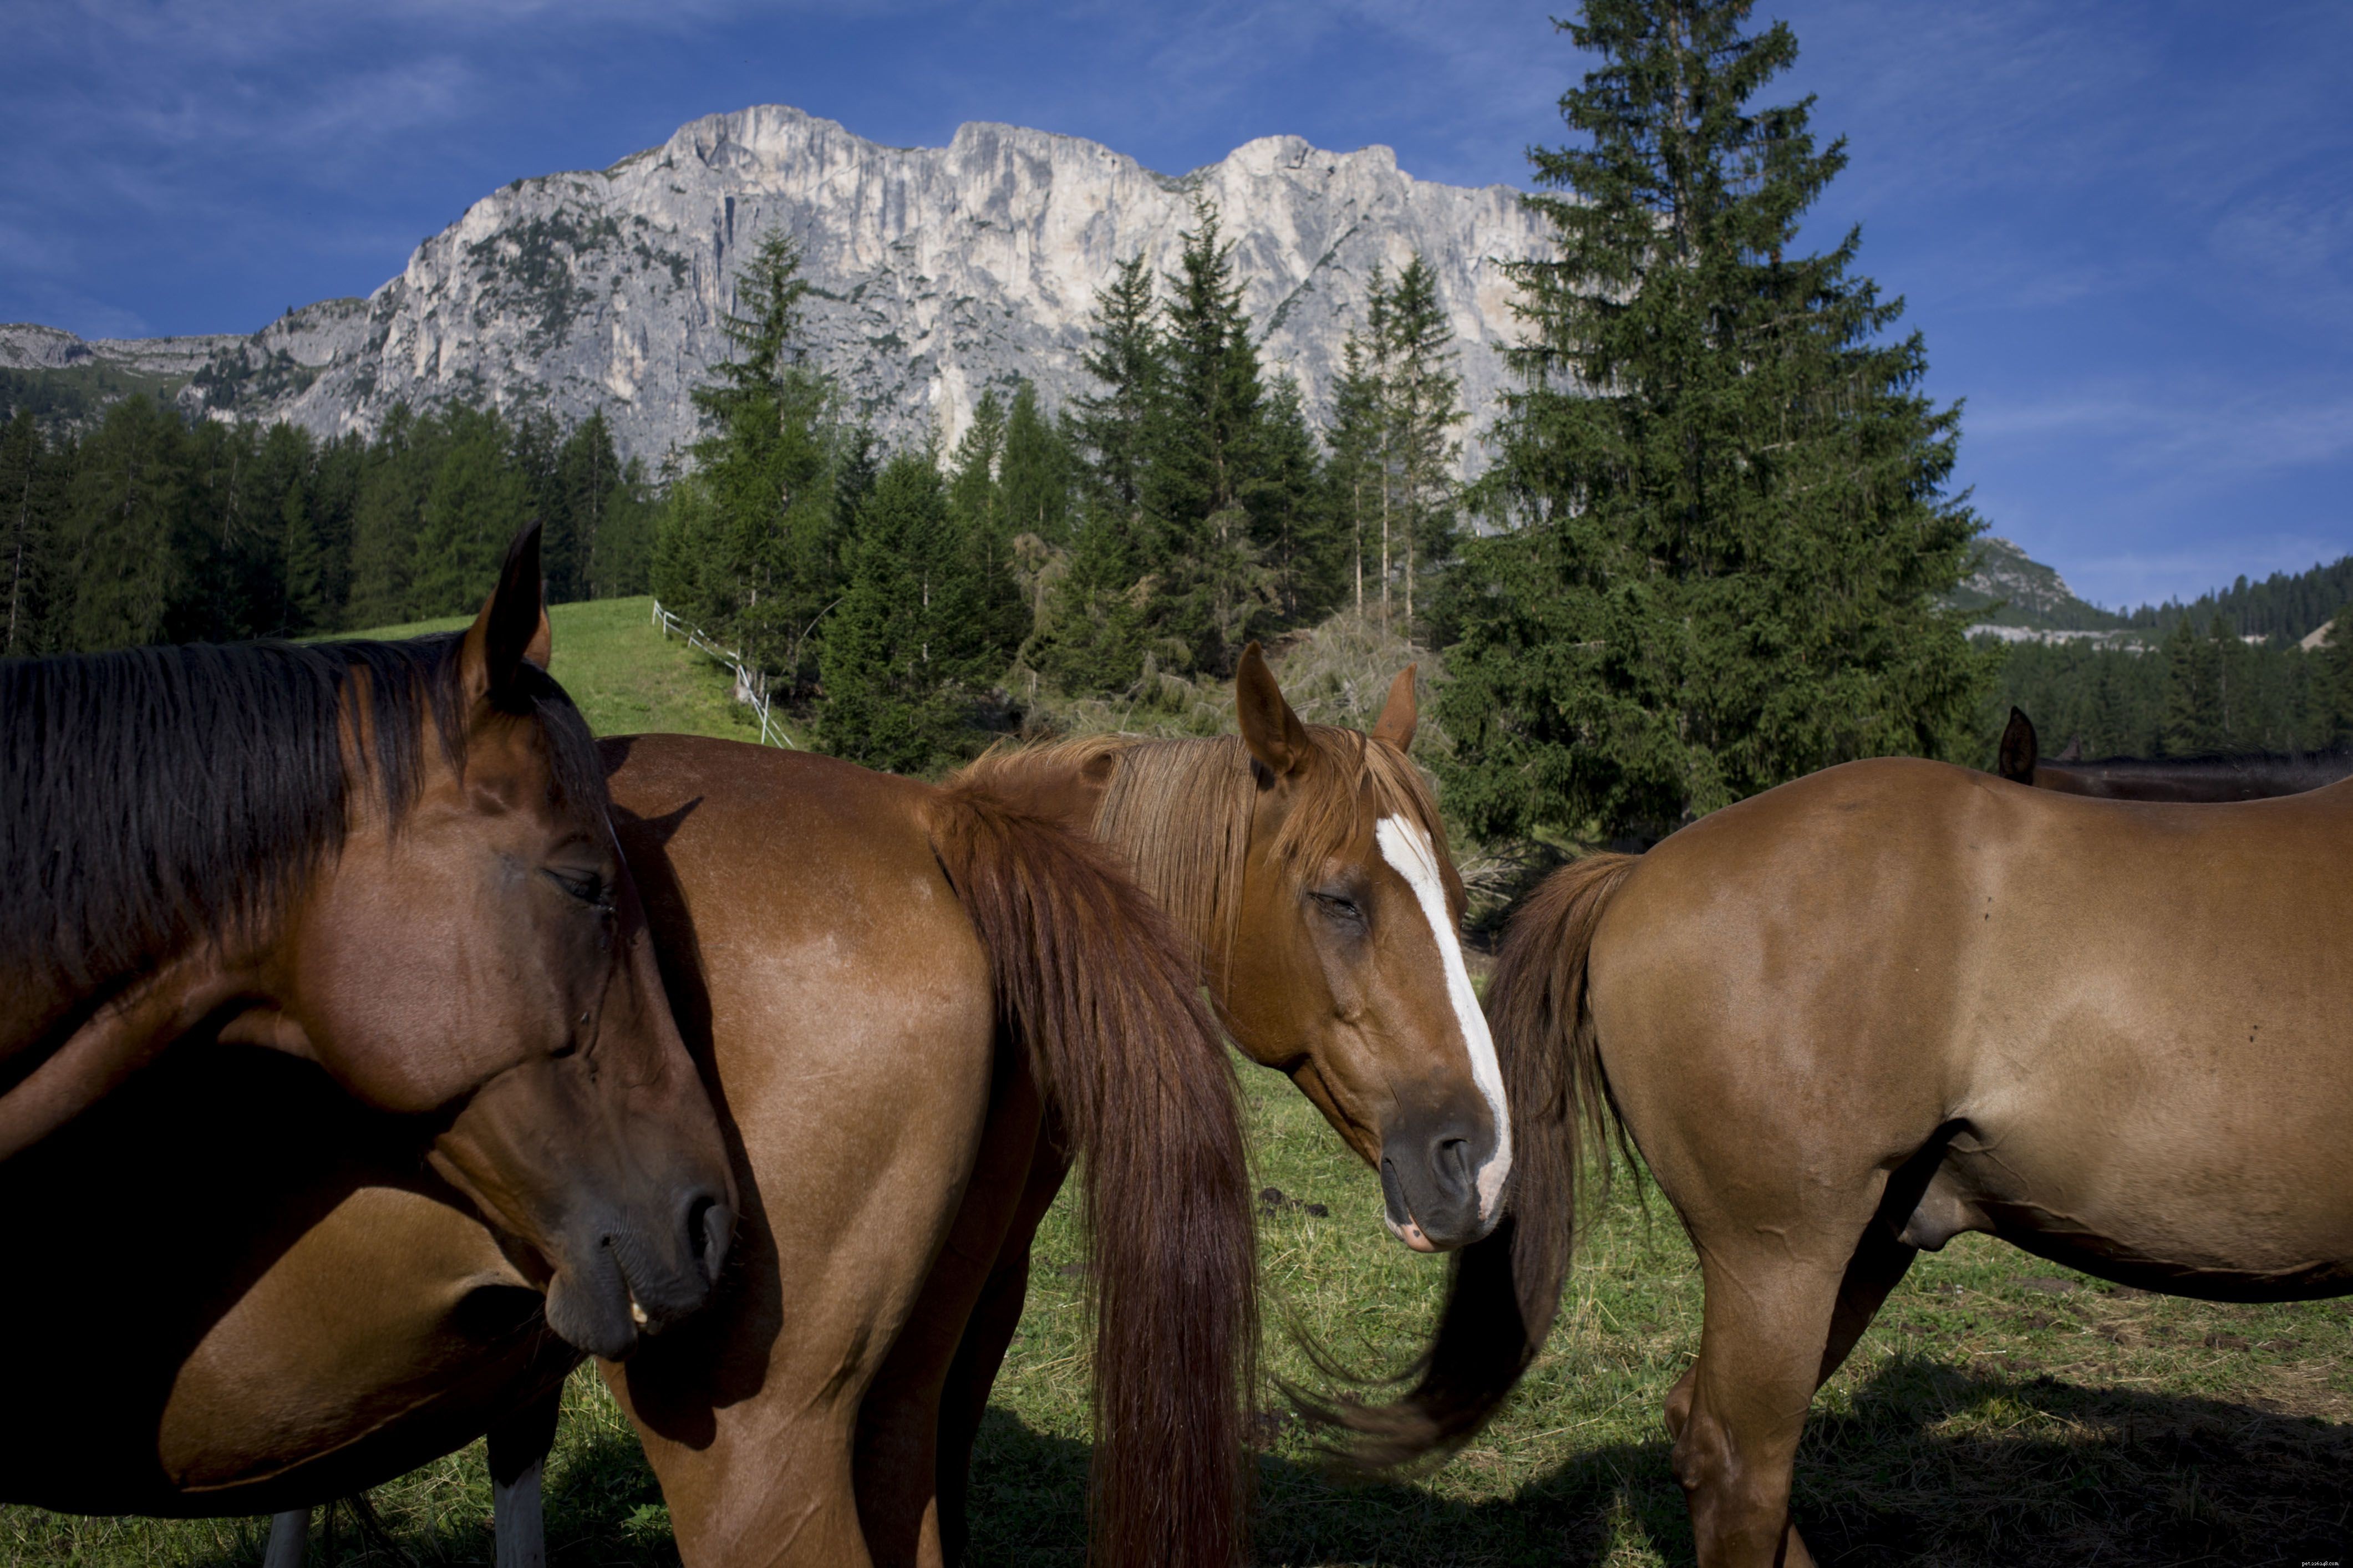 Comment identifier les maladies et affections cutanées du cheval